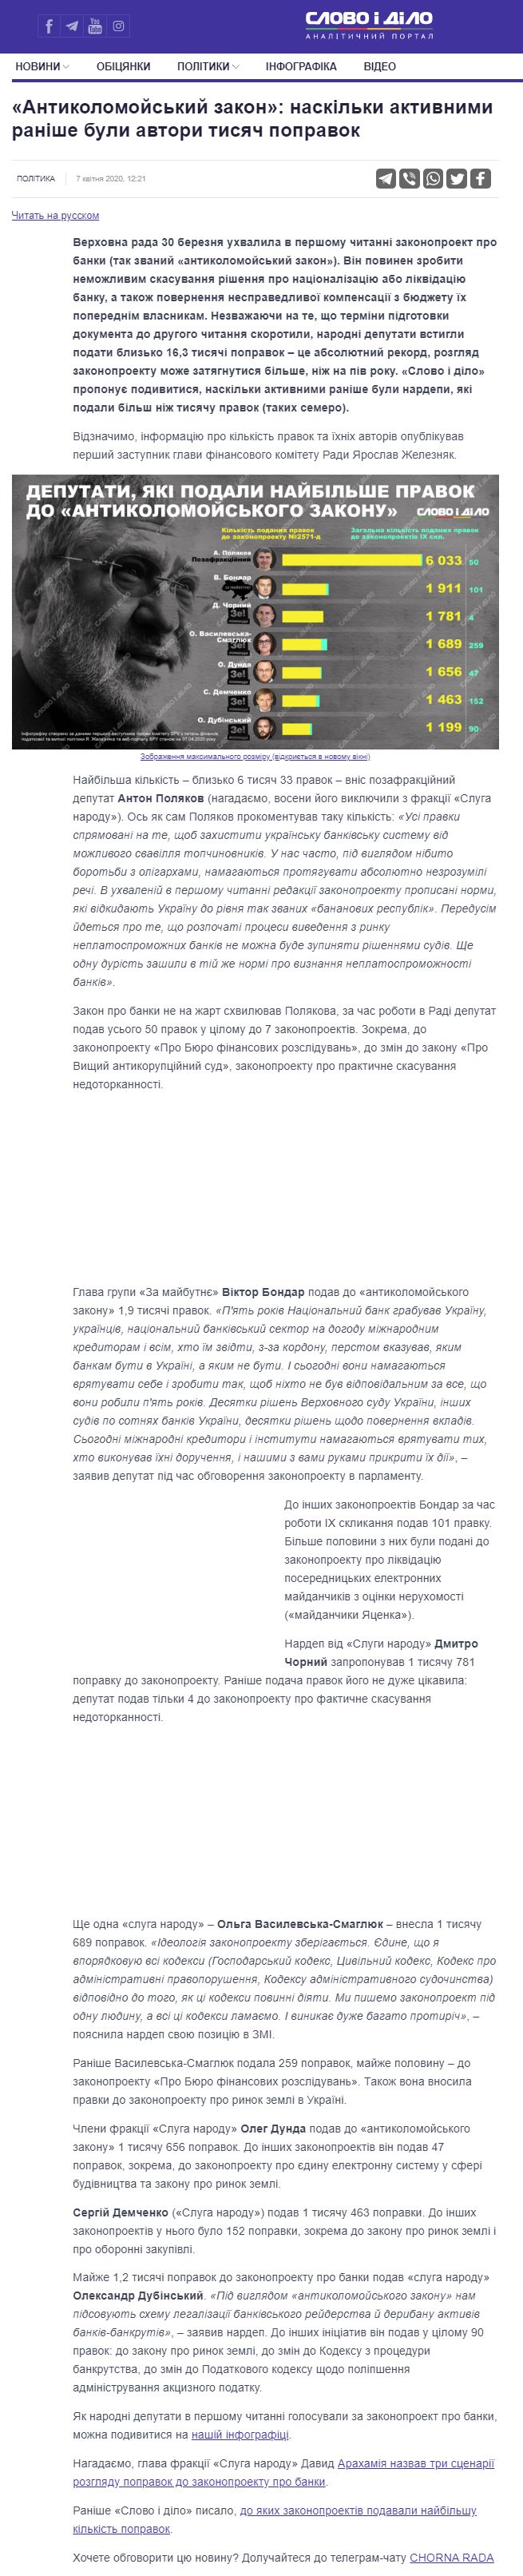 https://www.slovoidilo.ua/2020/04/07/infografika/polityka/antykolomojskyj-zakon-naskilky-aktyvnymy-ranishe-buly-avtory-tysyach-popravok